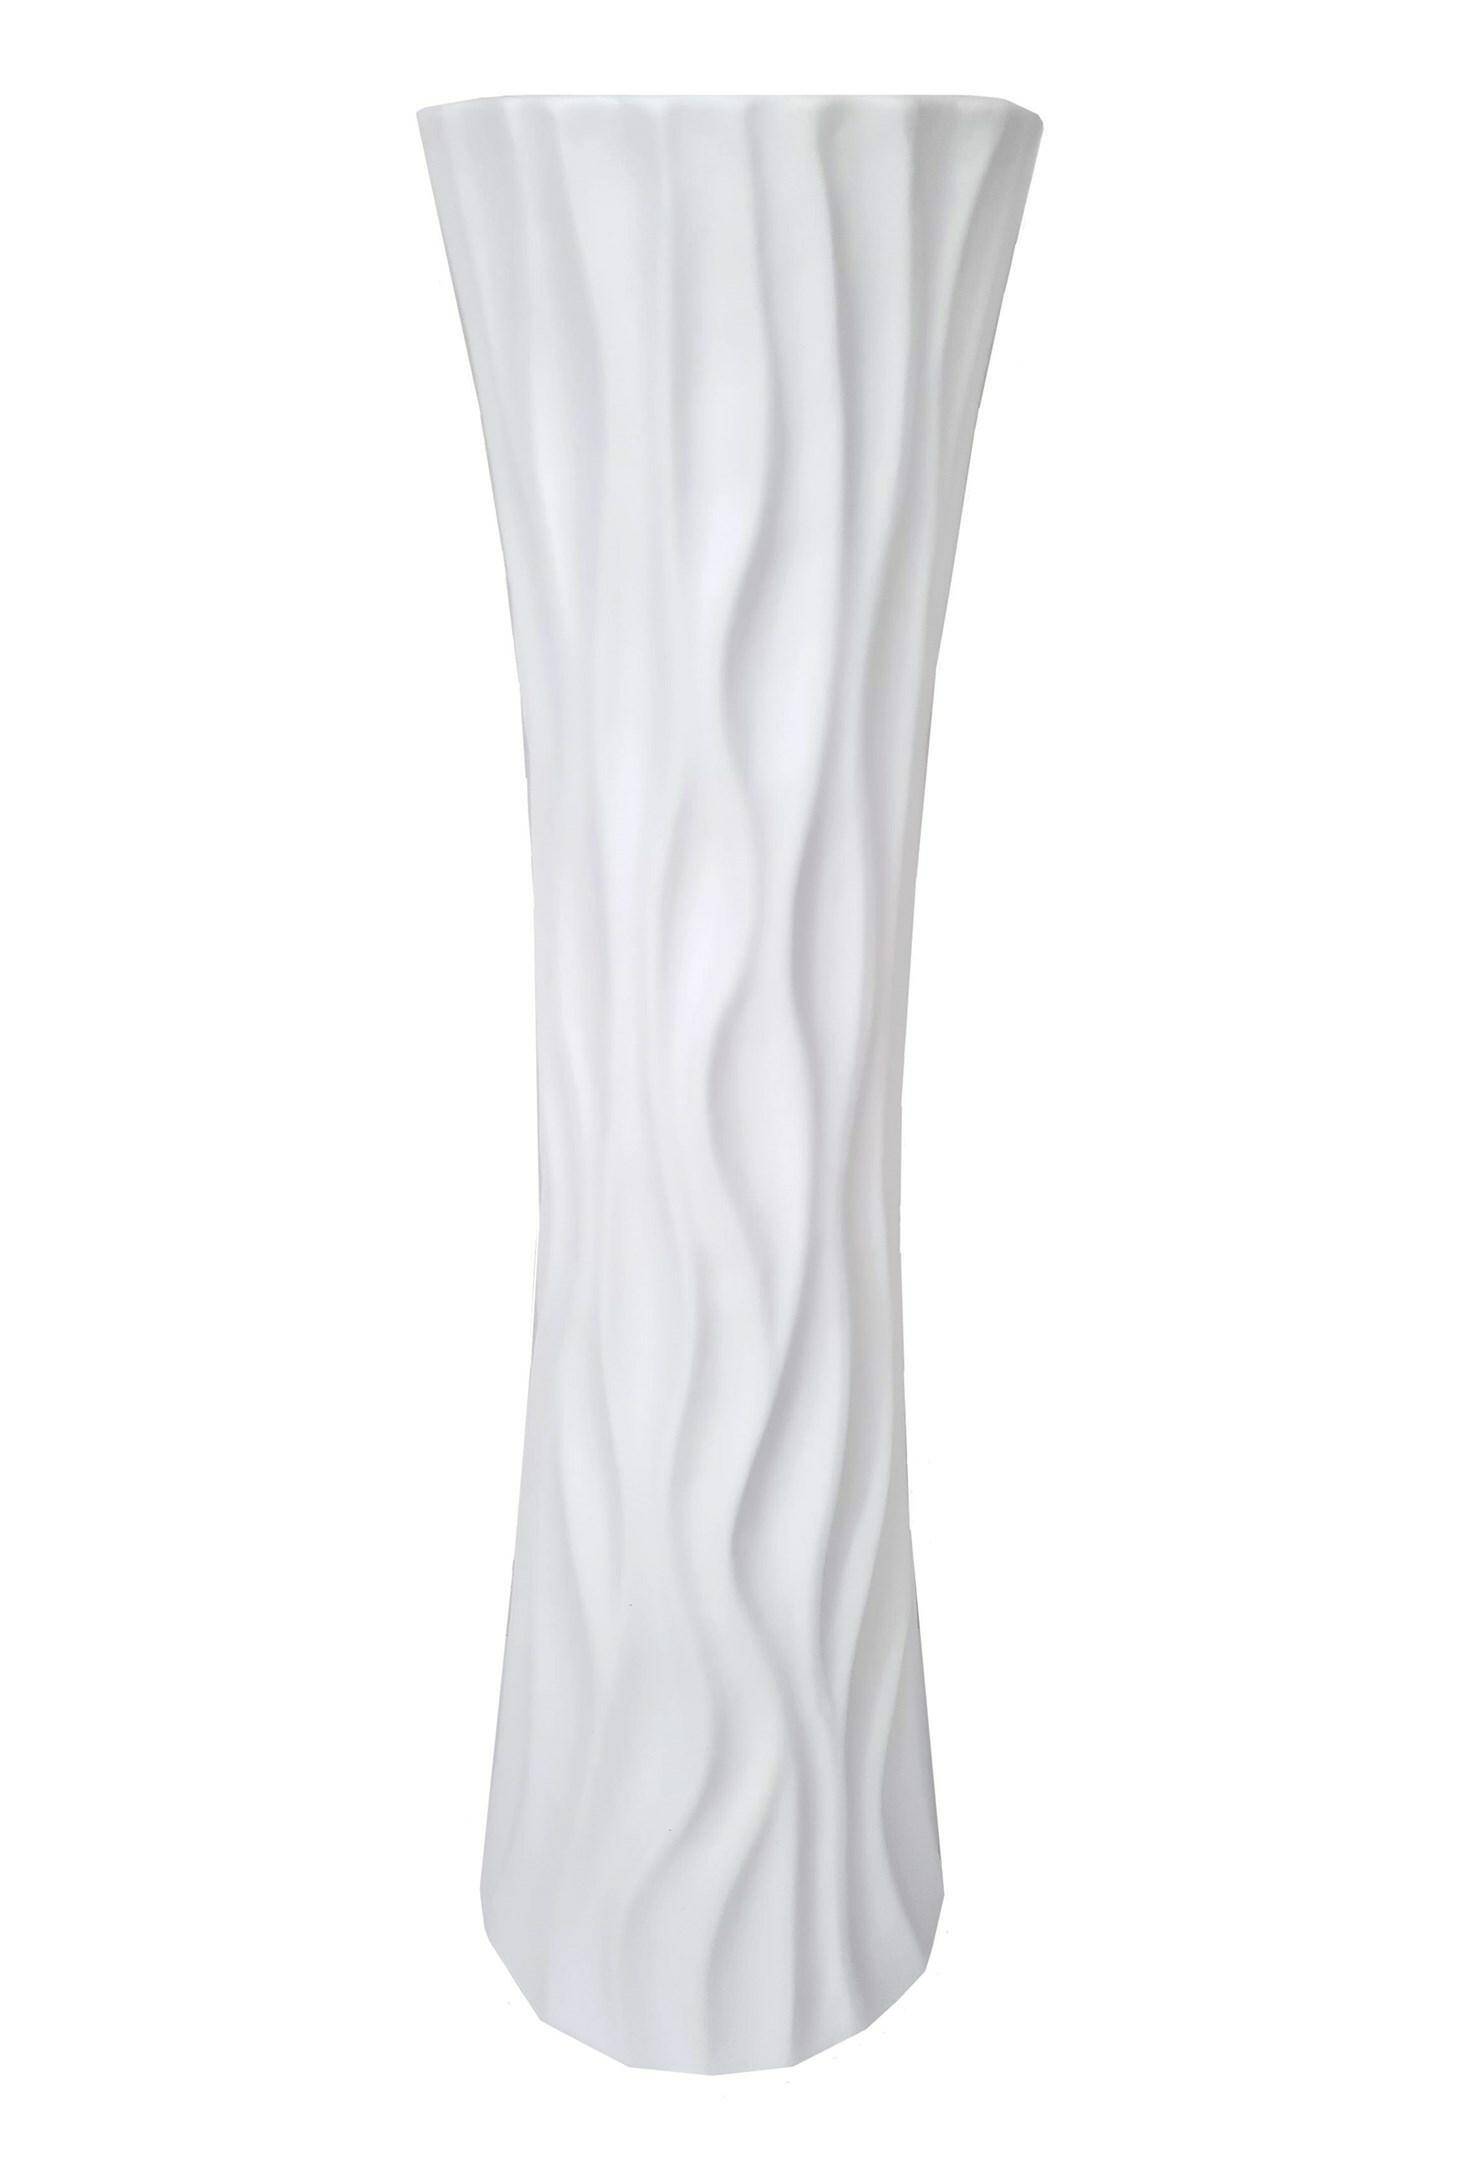 Wazon ceramiczny biały 45,5cm 18704A